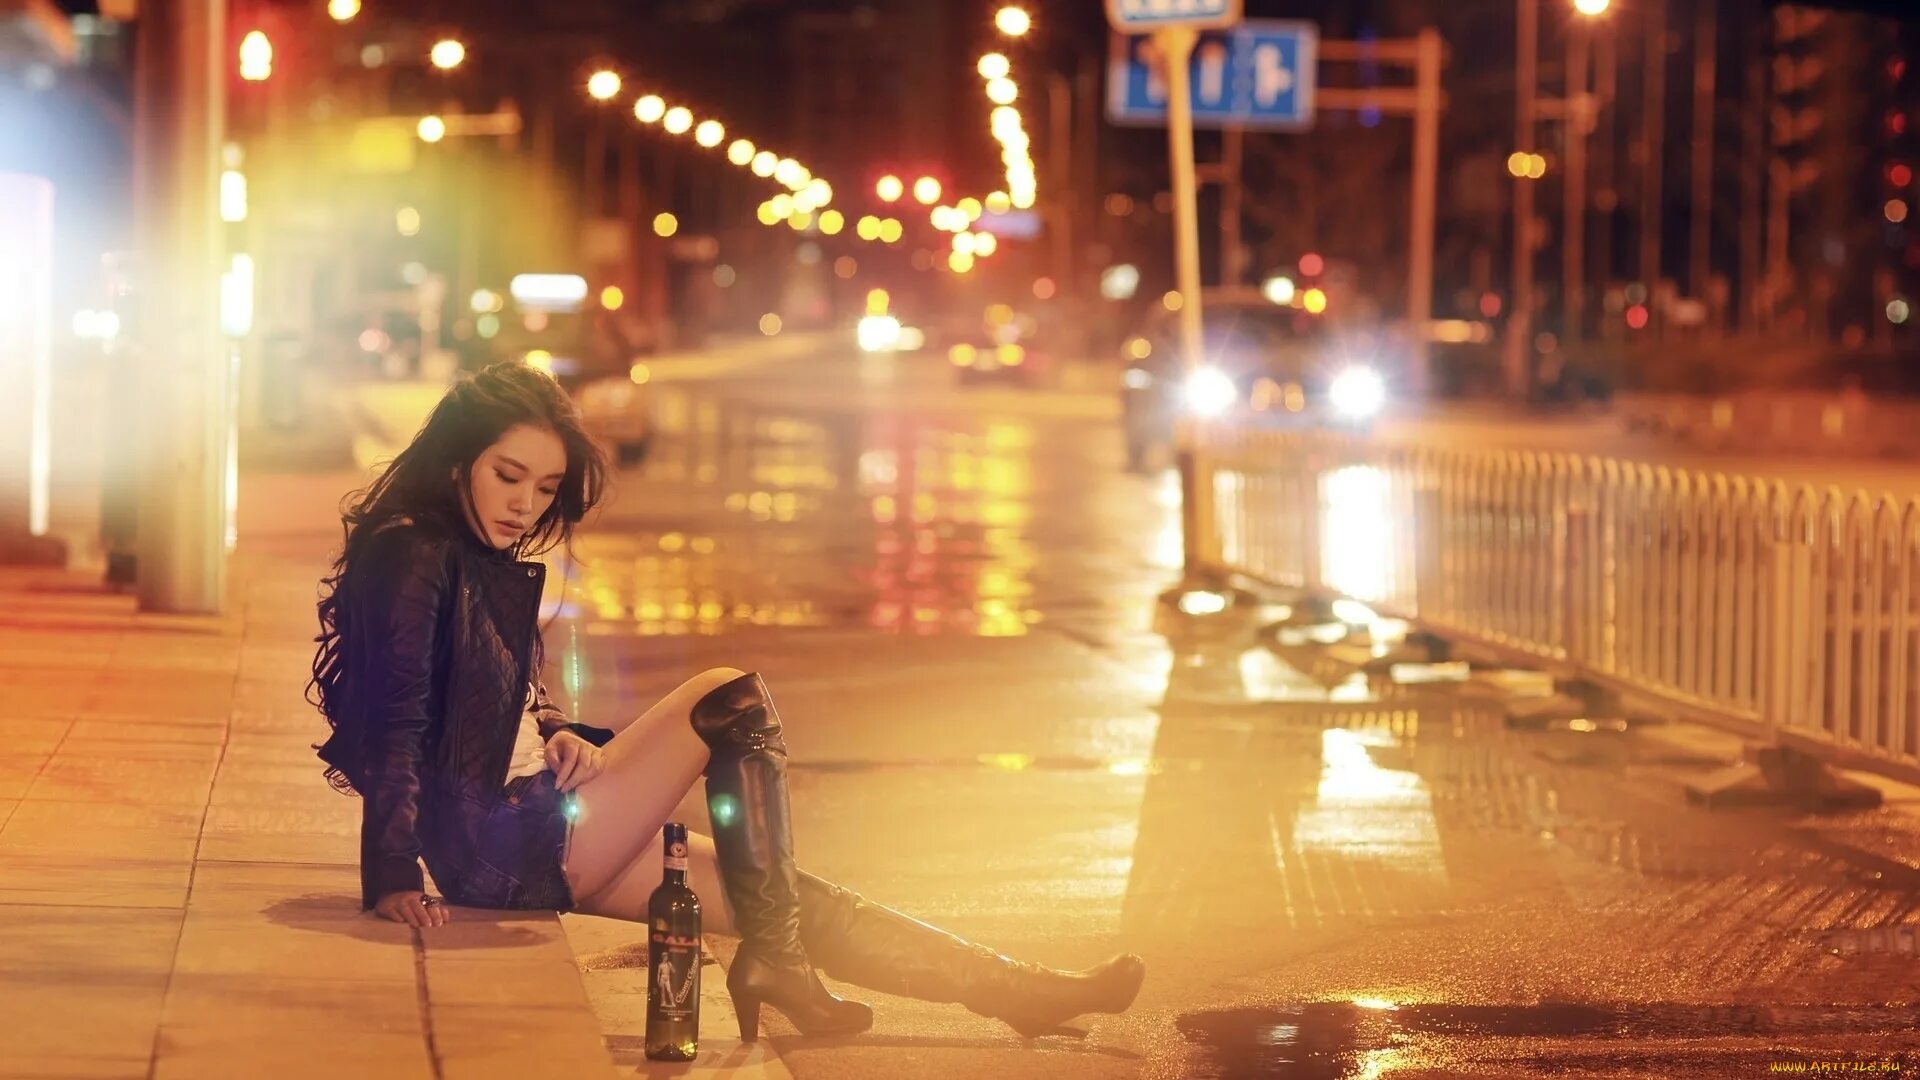 Слово гуляем красиво. Девушка ночью в городе. Ночная фотосессия в городе. Девушка под дождем в городе. Девушка и ночной город.